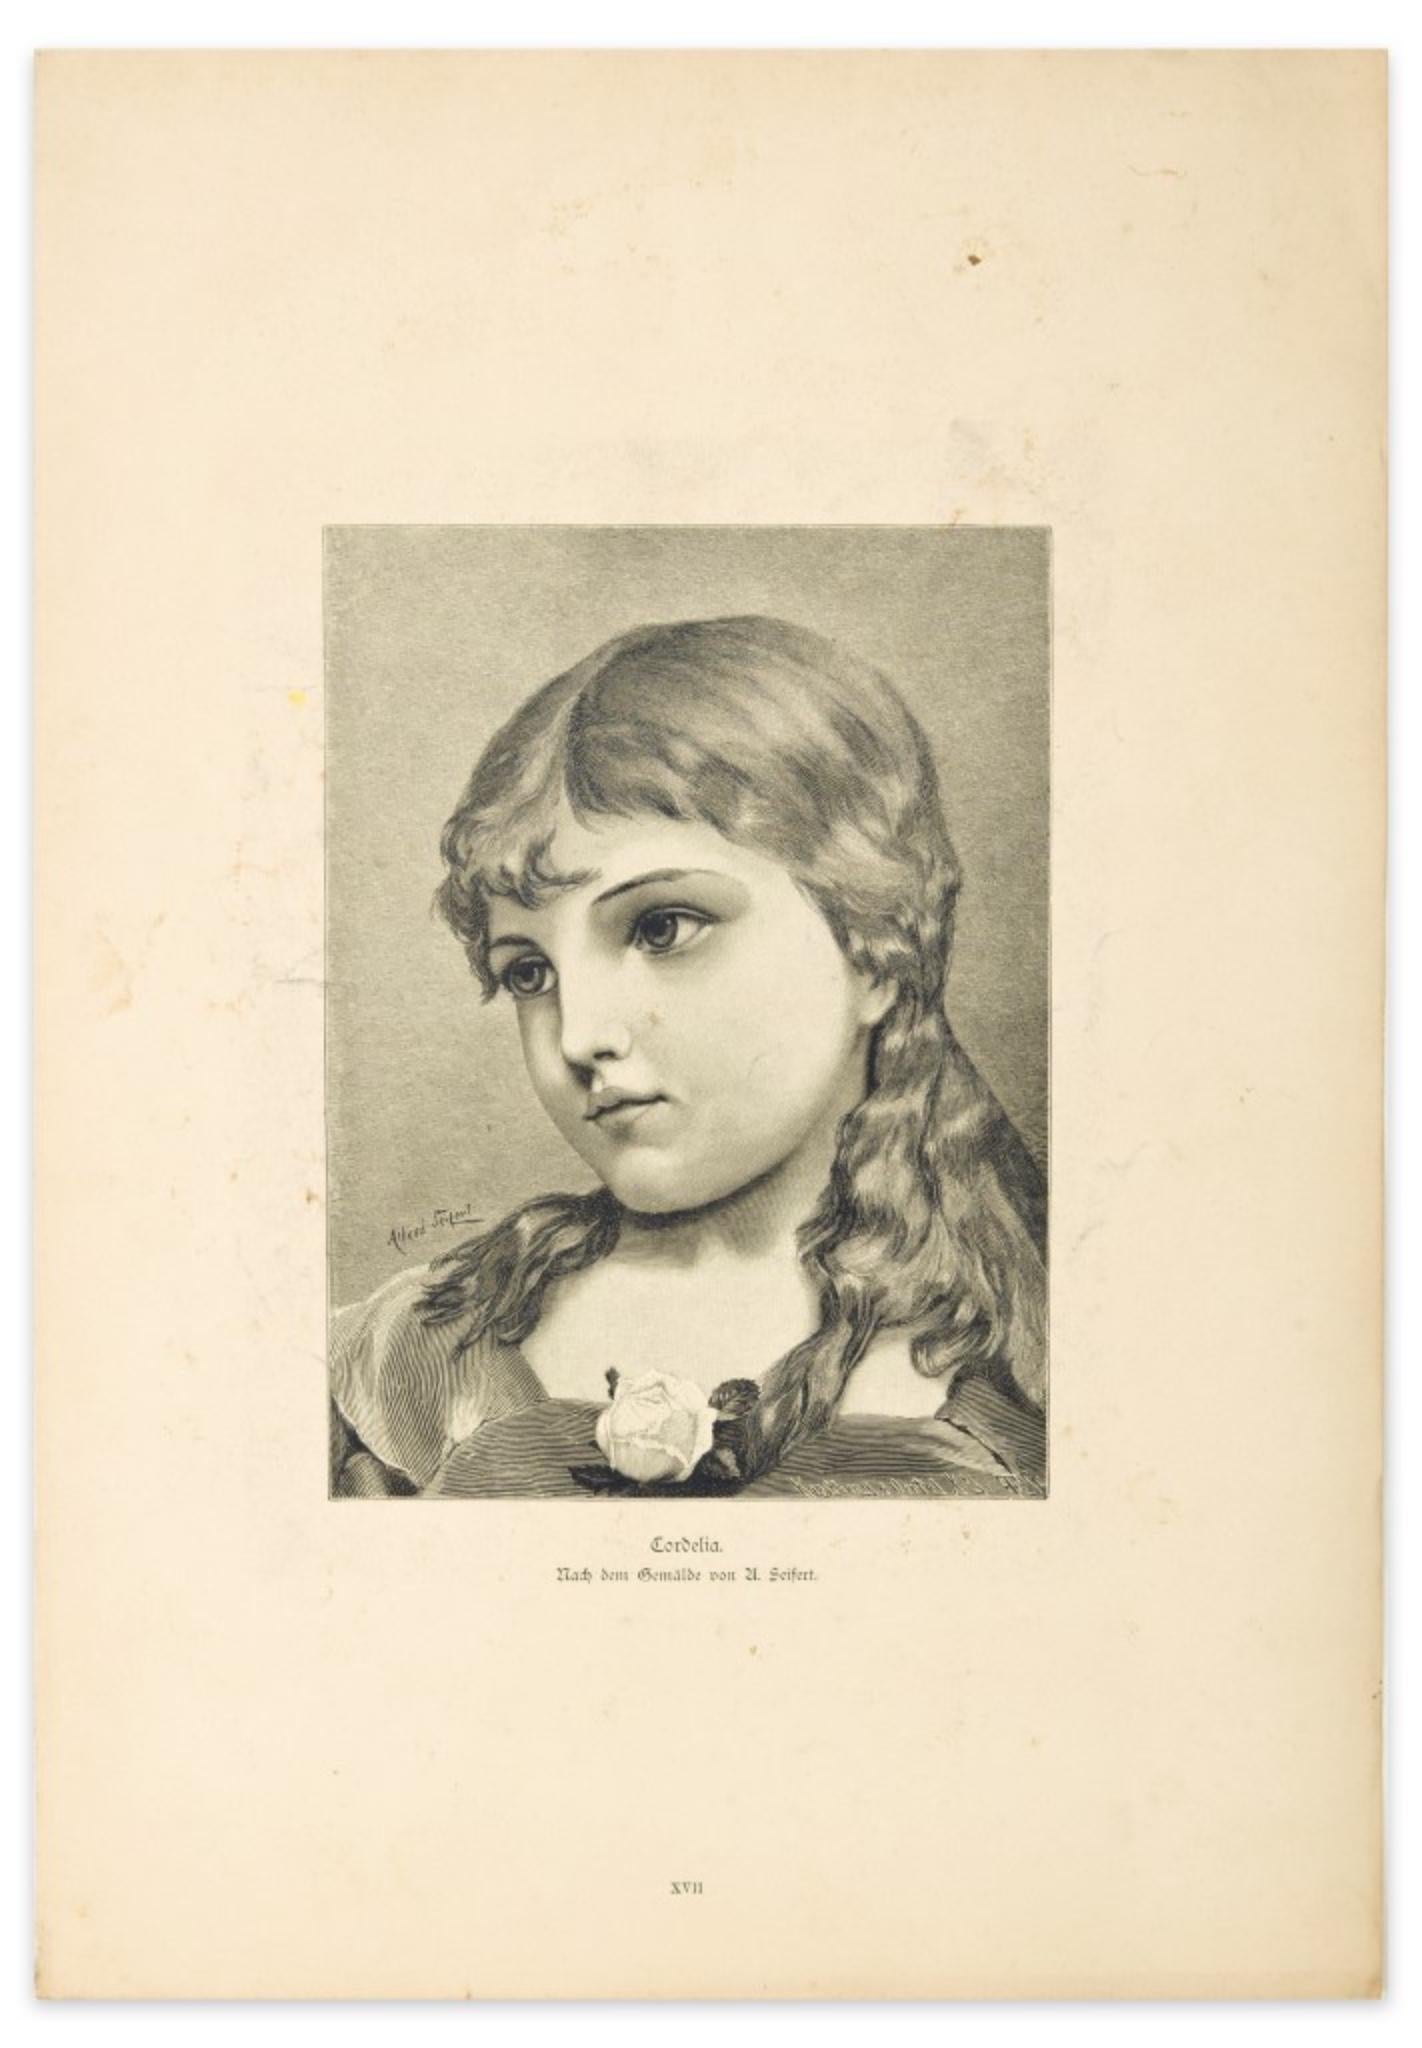 Die Frau ist eine Original-Zinkographie auf Papier von U. Seifert aus dem Jahr 1905.

Diese besondere Zinkographie stellt das Porträt einer Frau dar. Der Titel des Werkes "Cordelia" und die Beschriftung "Gemalde don U.Seifert" in der unteren